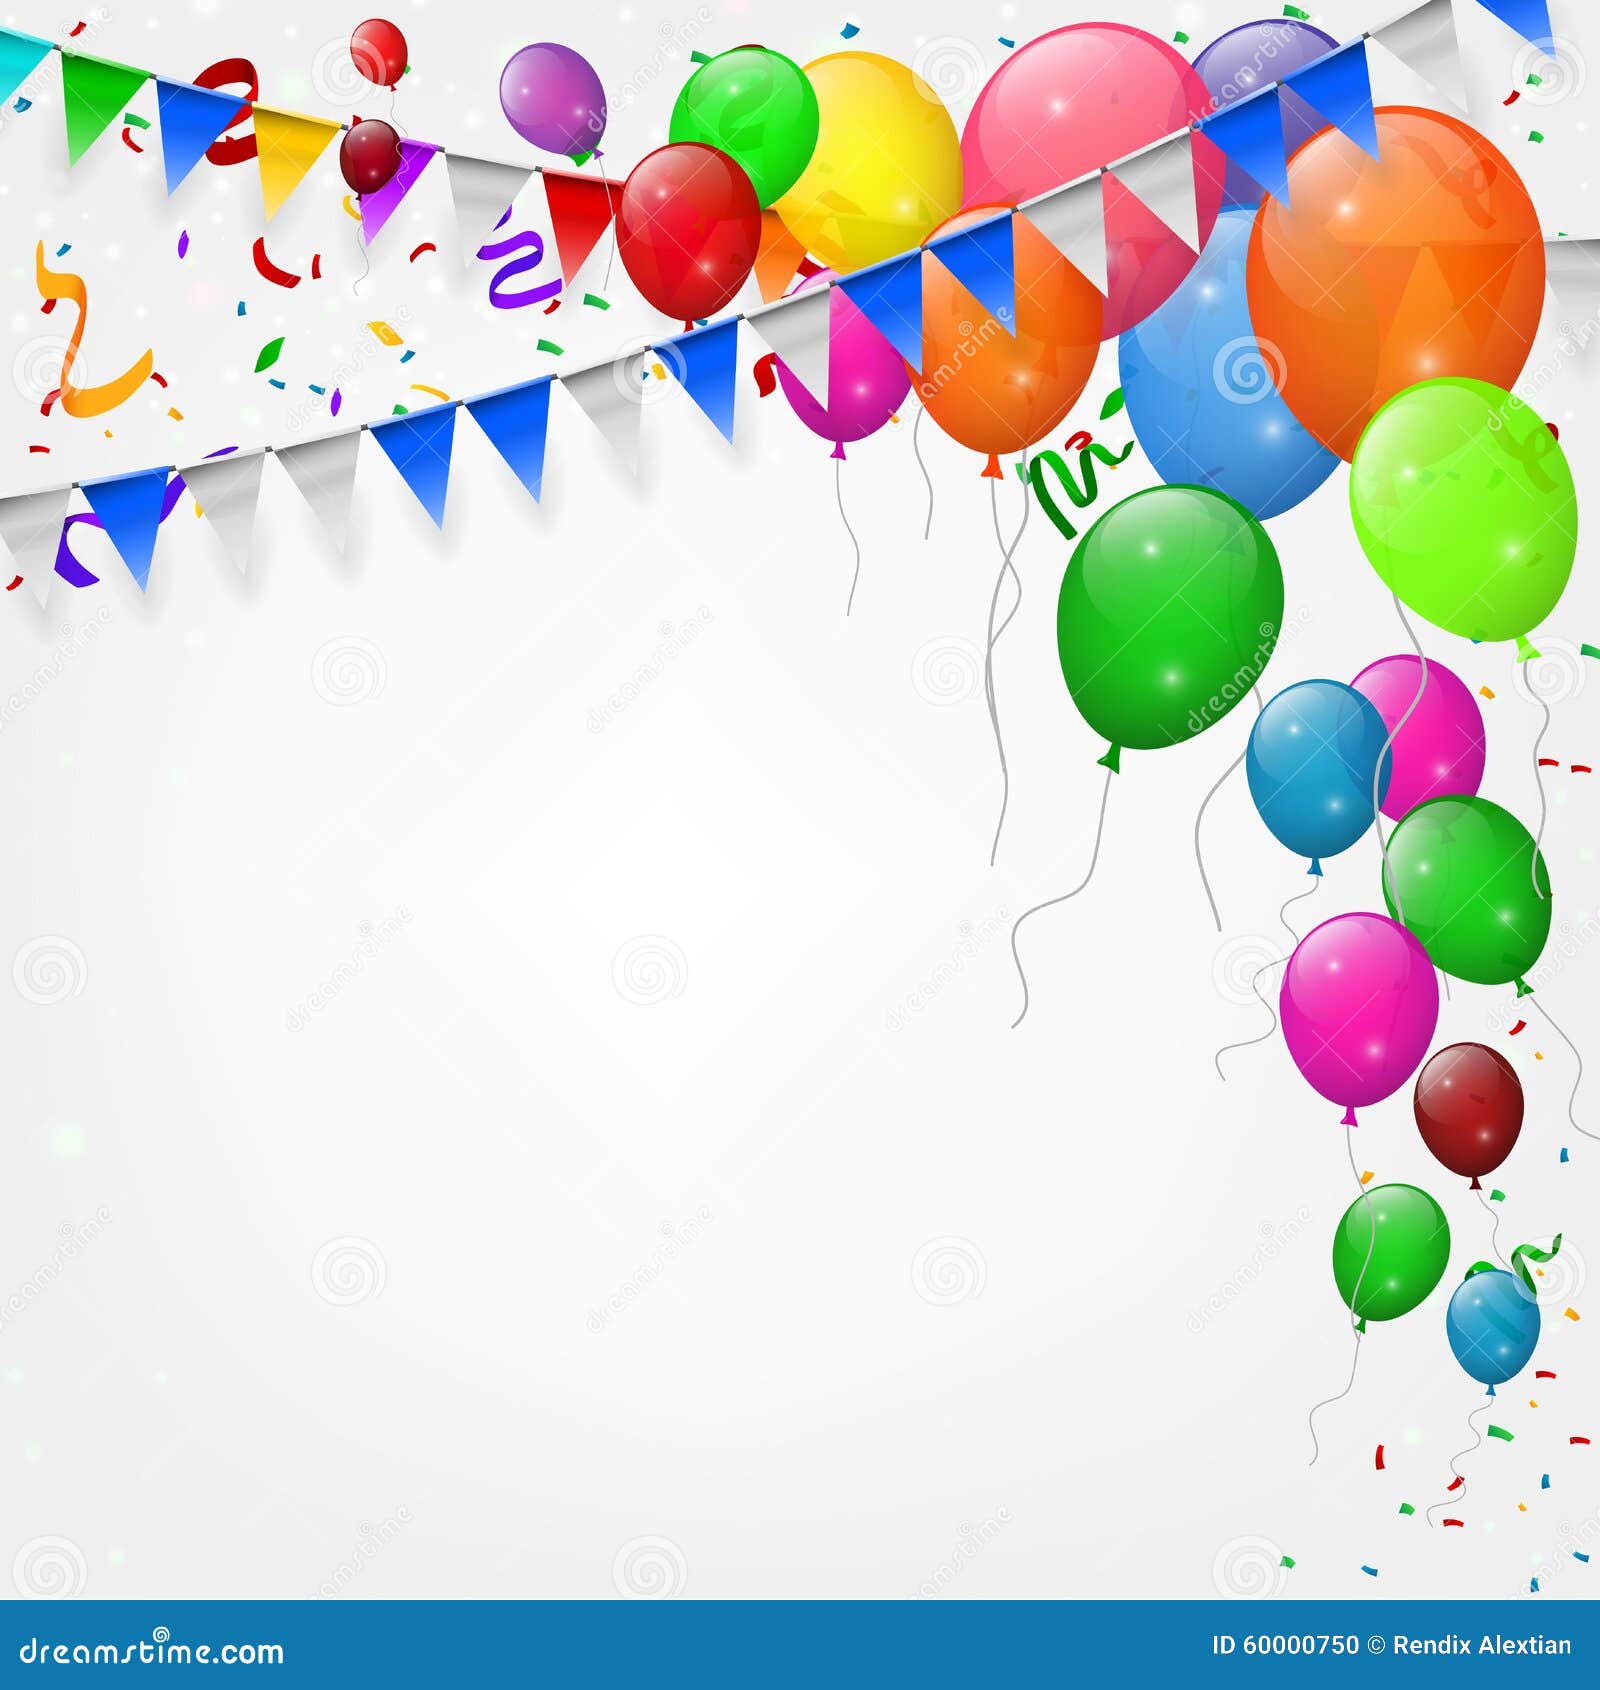 Illustration horizontale de joyeux anniversaire avec ballon rose et violet  réaliste 3d et confitti